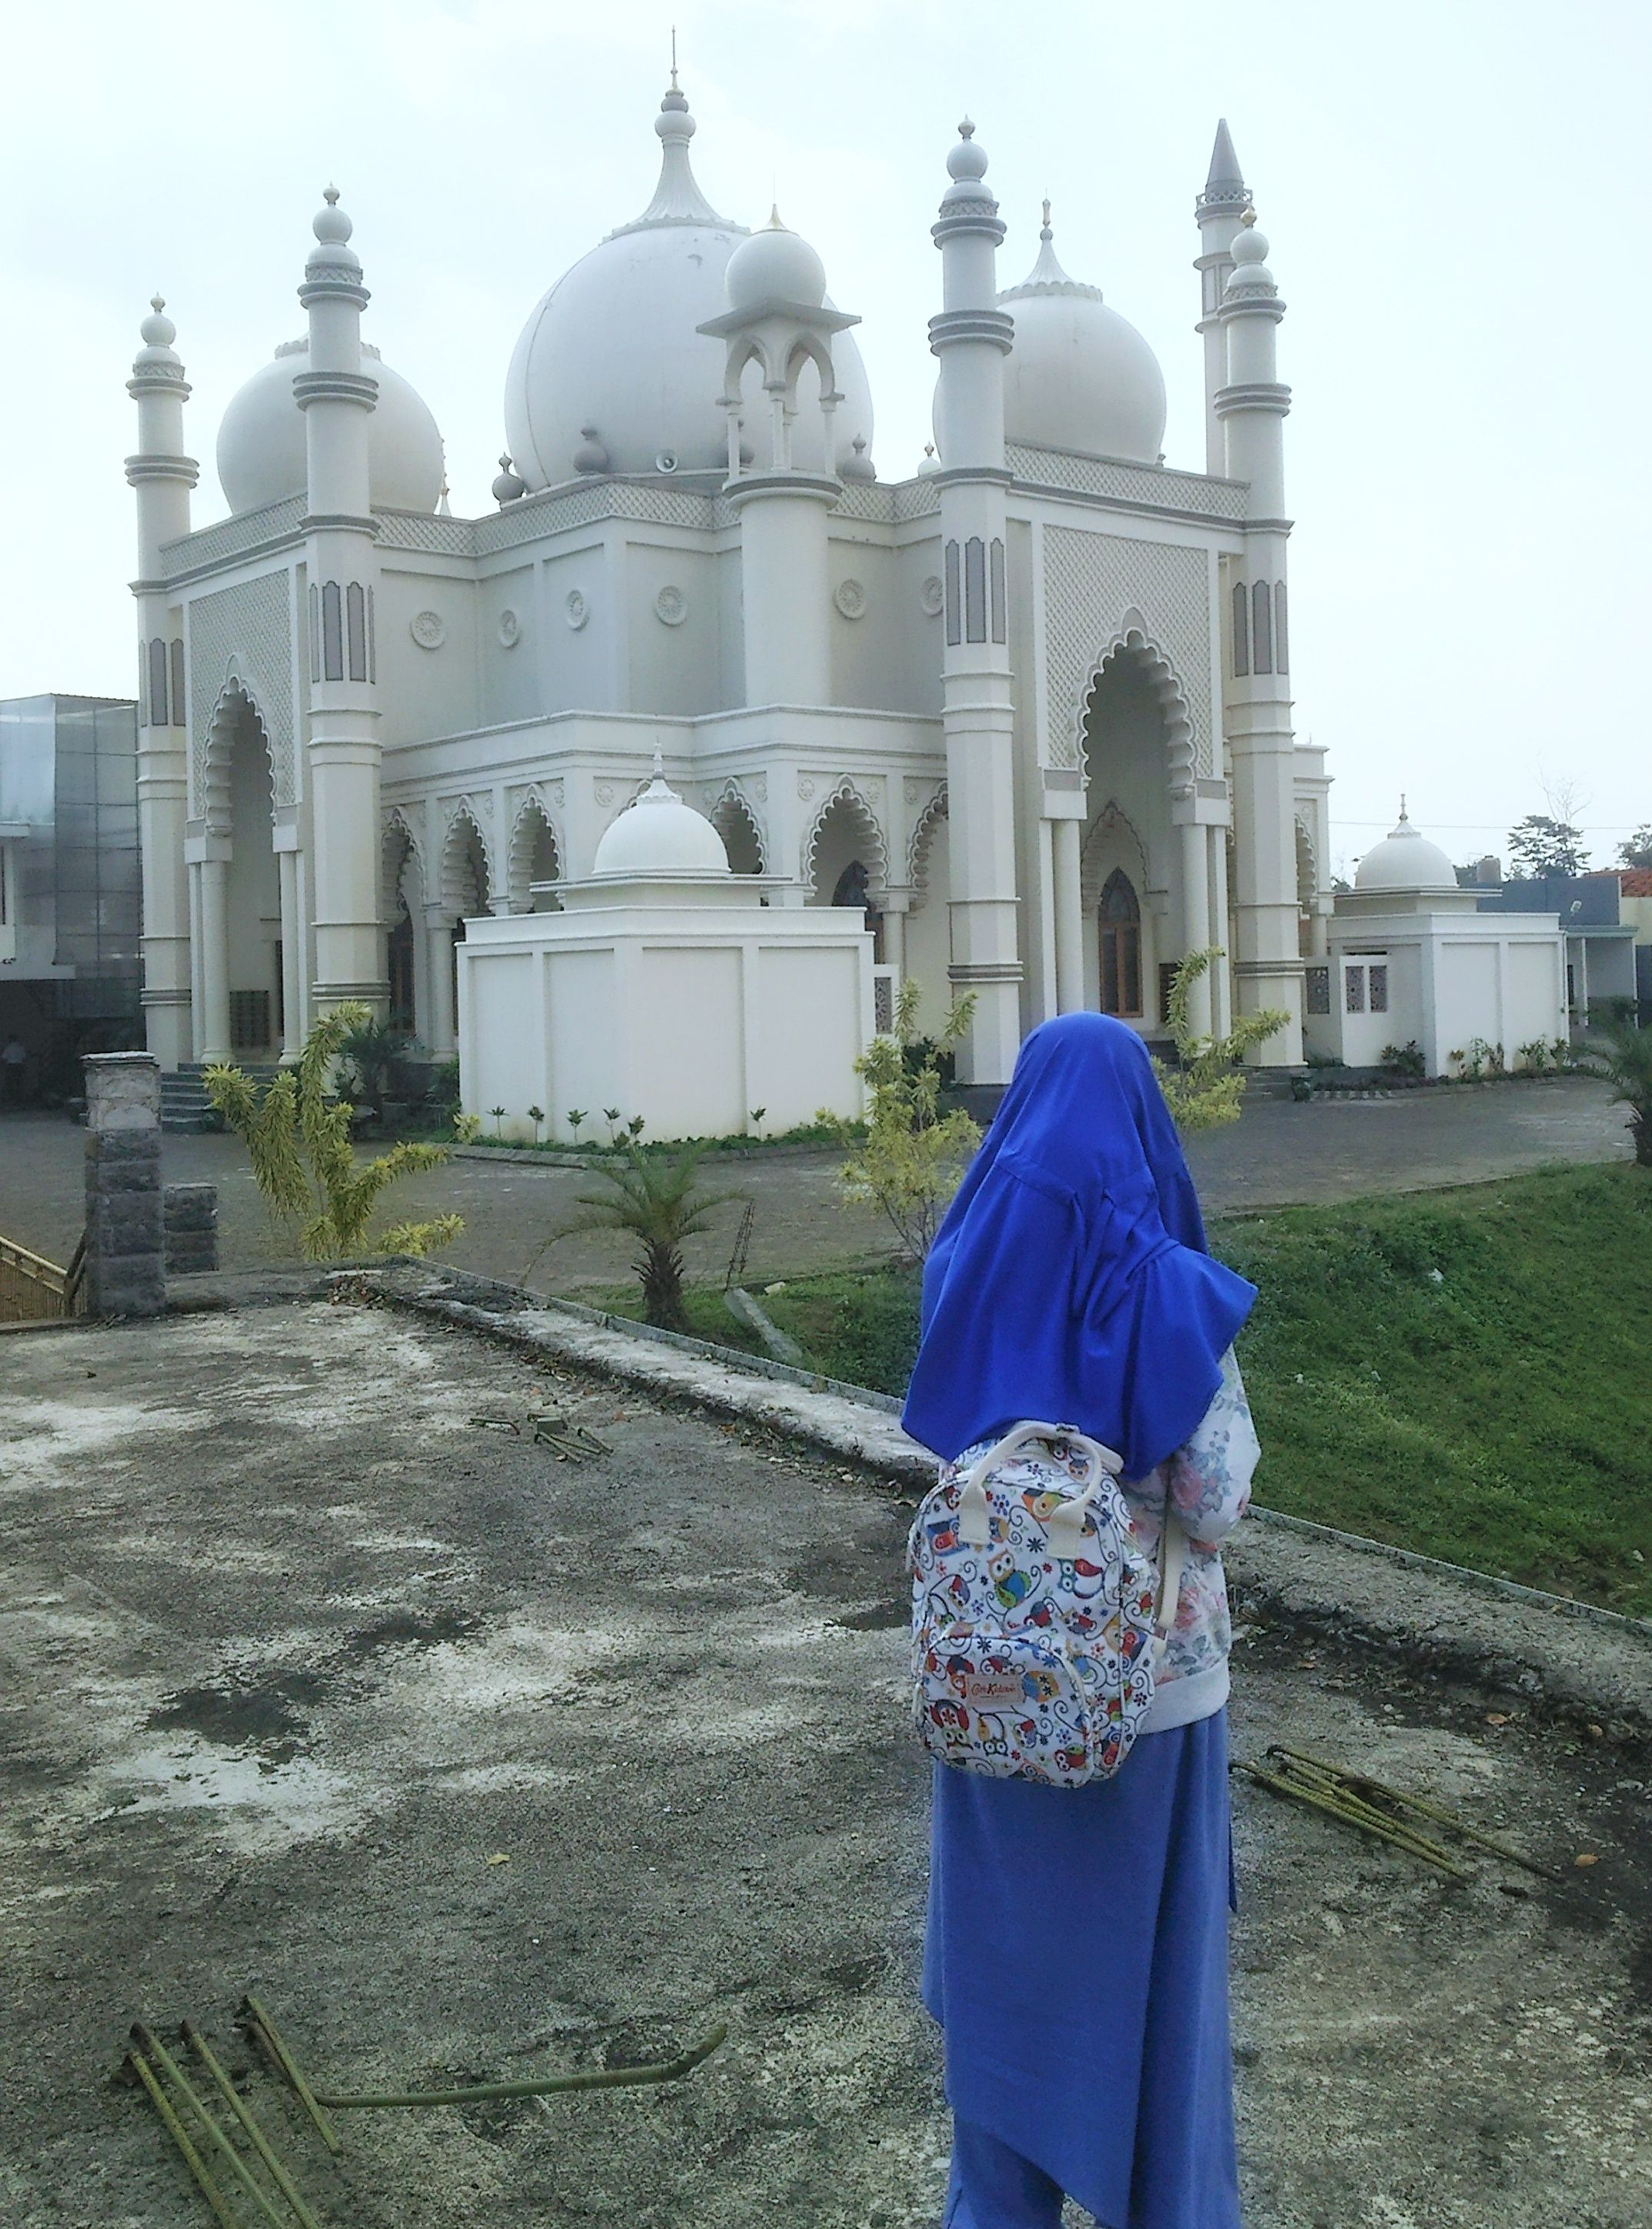 warna biru dari jilbab dan celana lebar kontras dengan latar belakang yang putih (dokumentasi Himam Miladi)